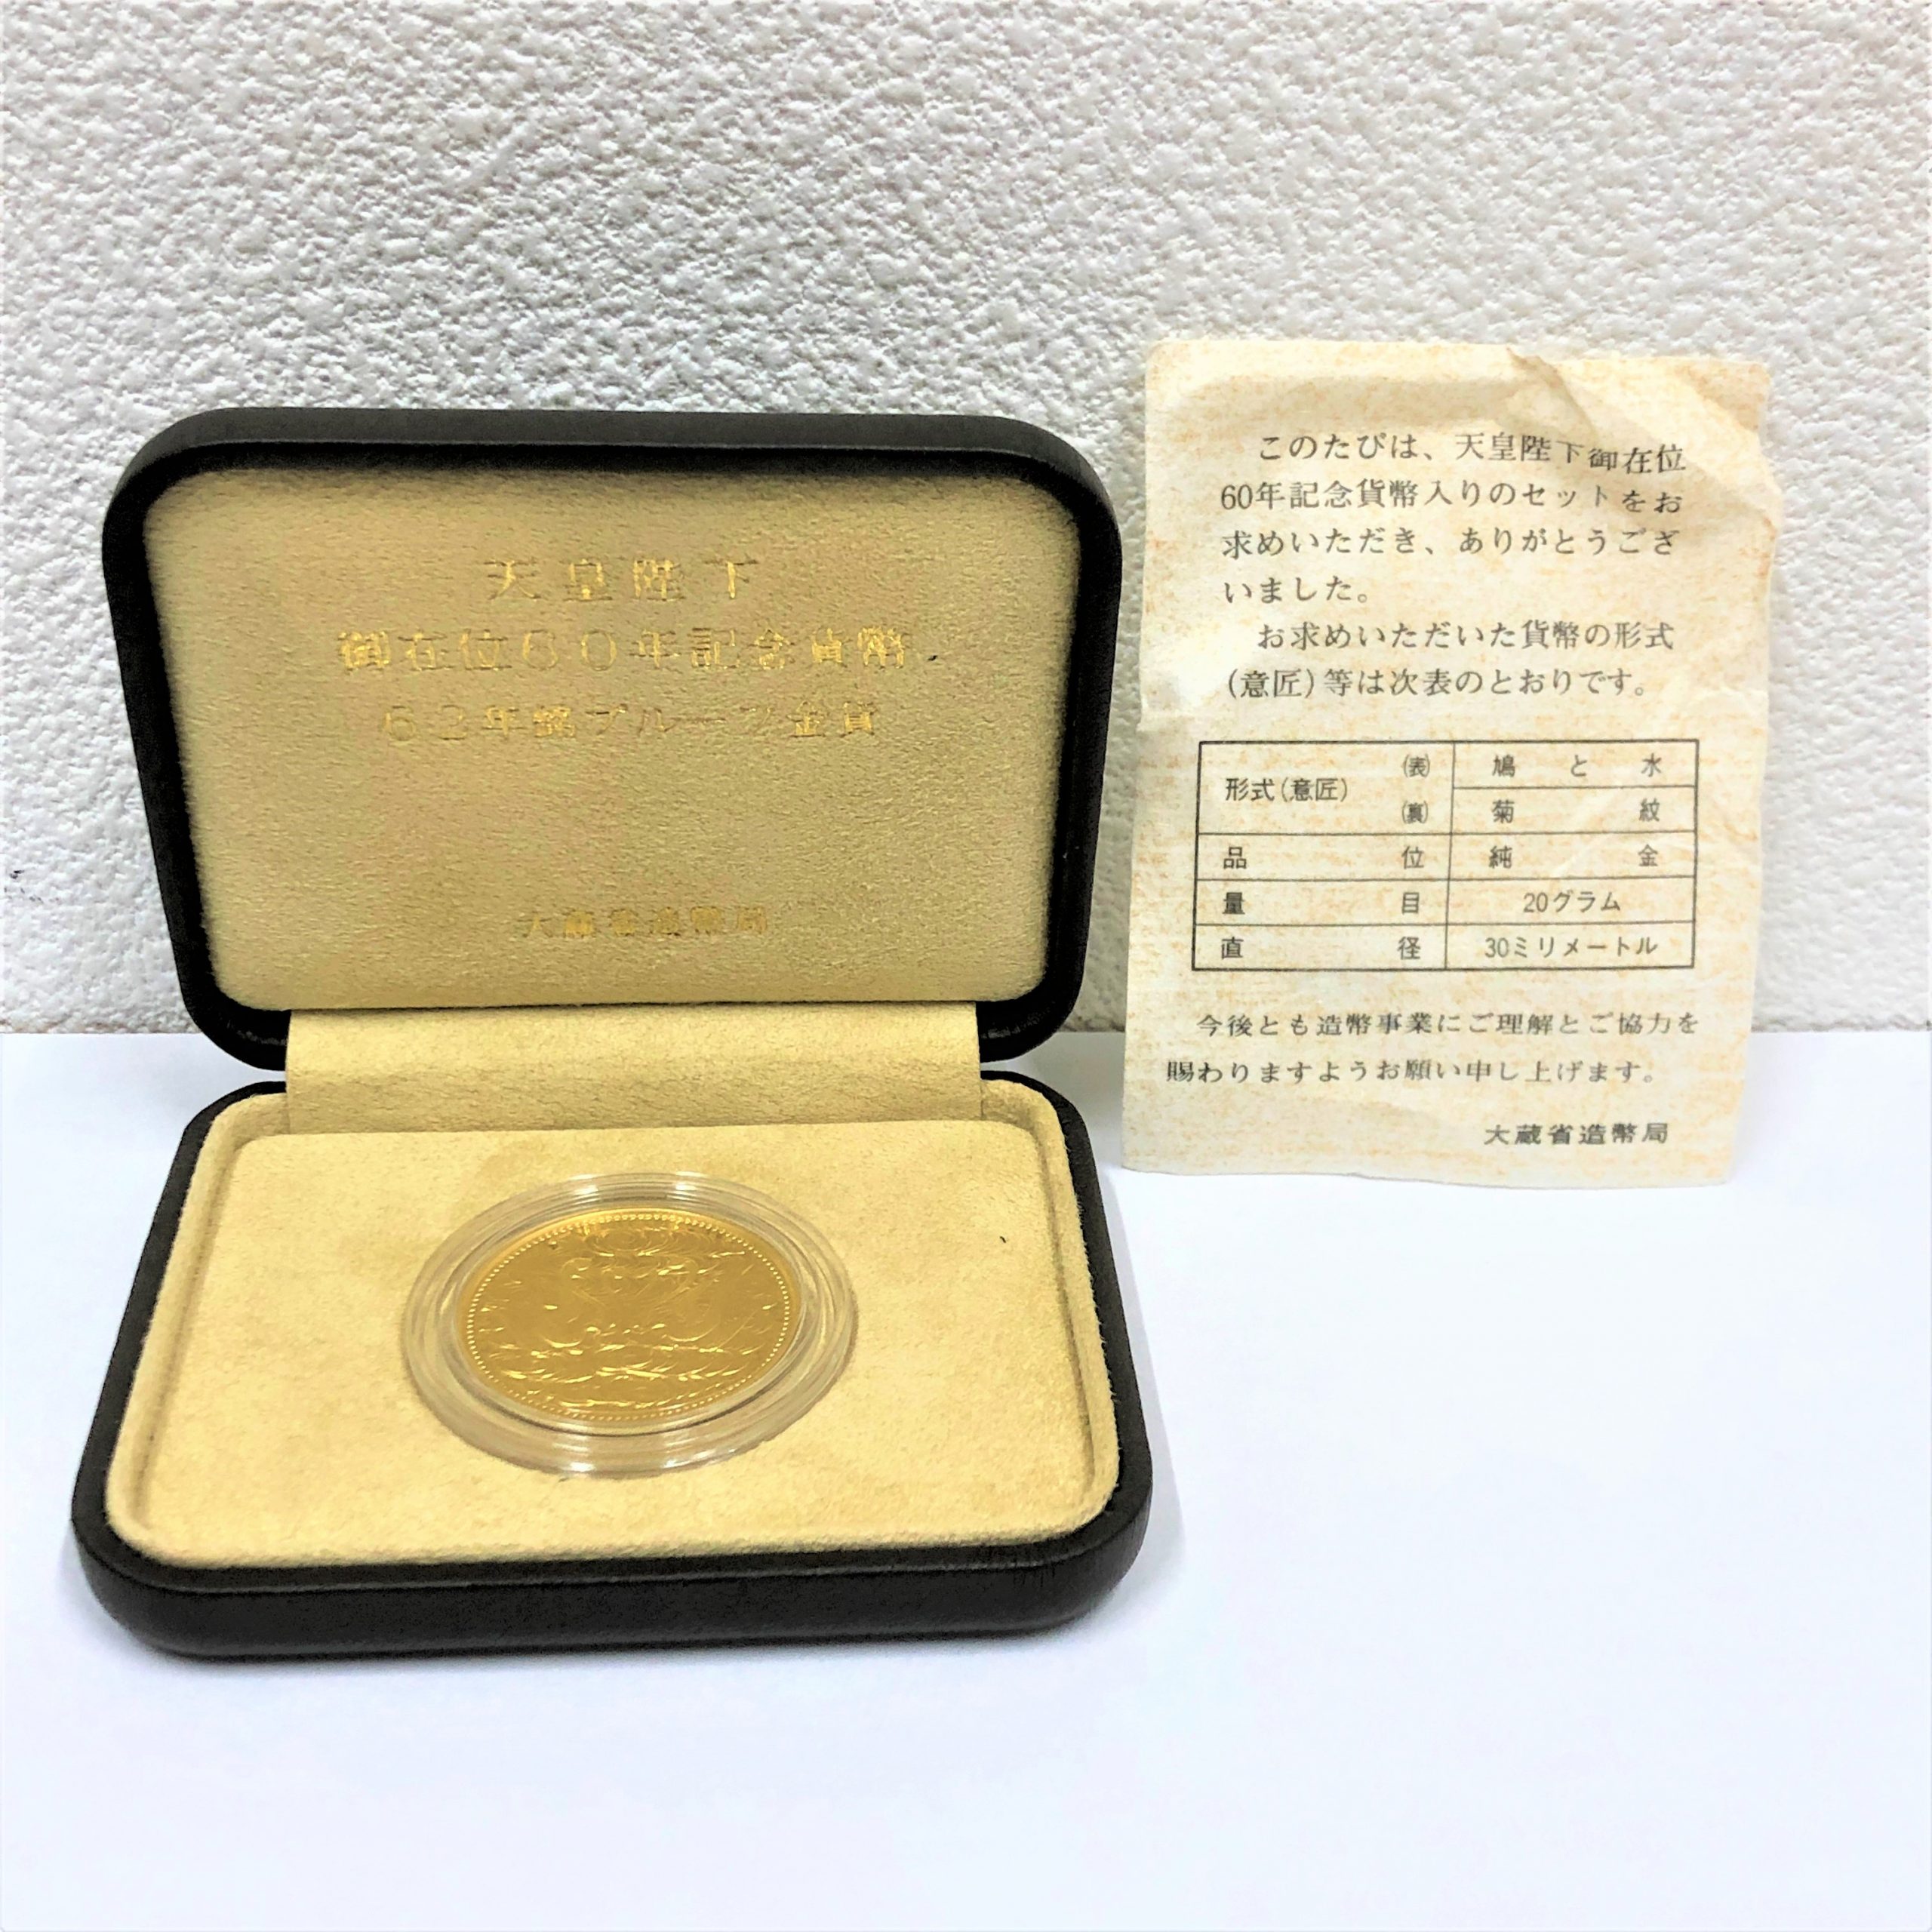 オチコイン販売天皇陛下御在位60年記念 1万円銀貨 PCGS鑑定済 MS67（未使用品）